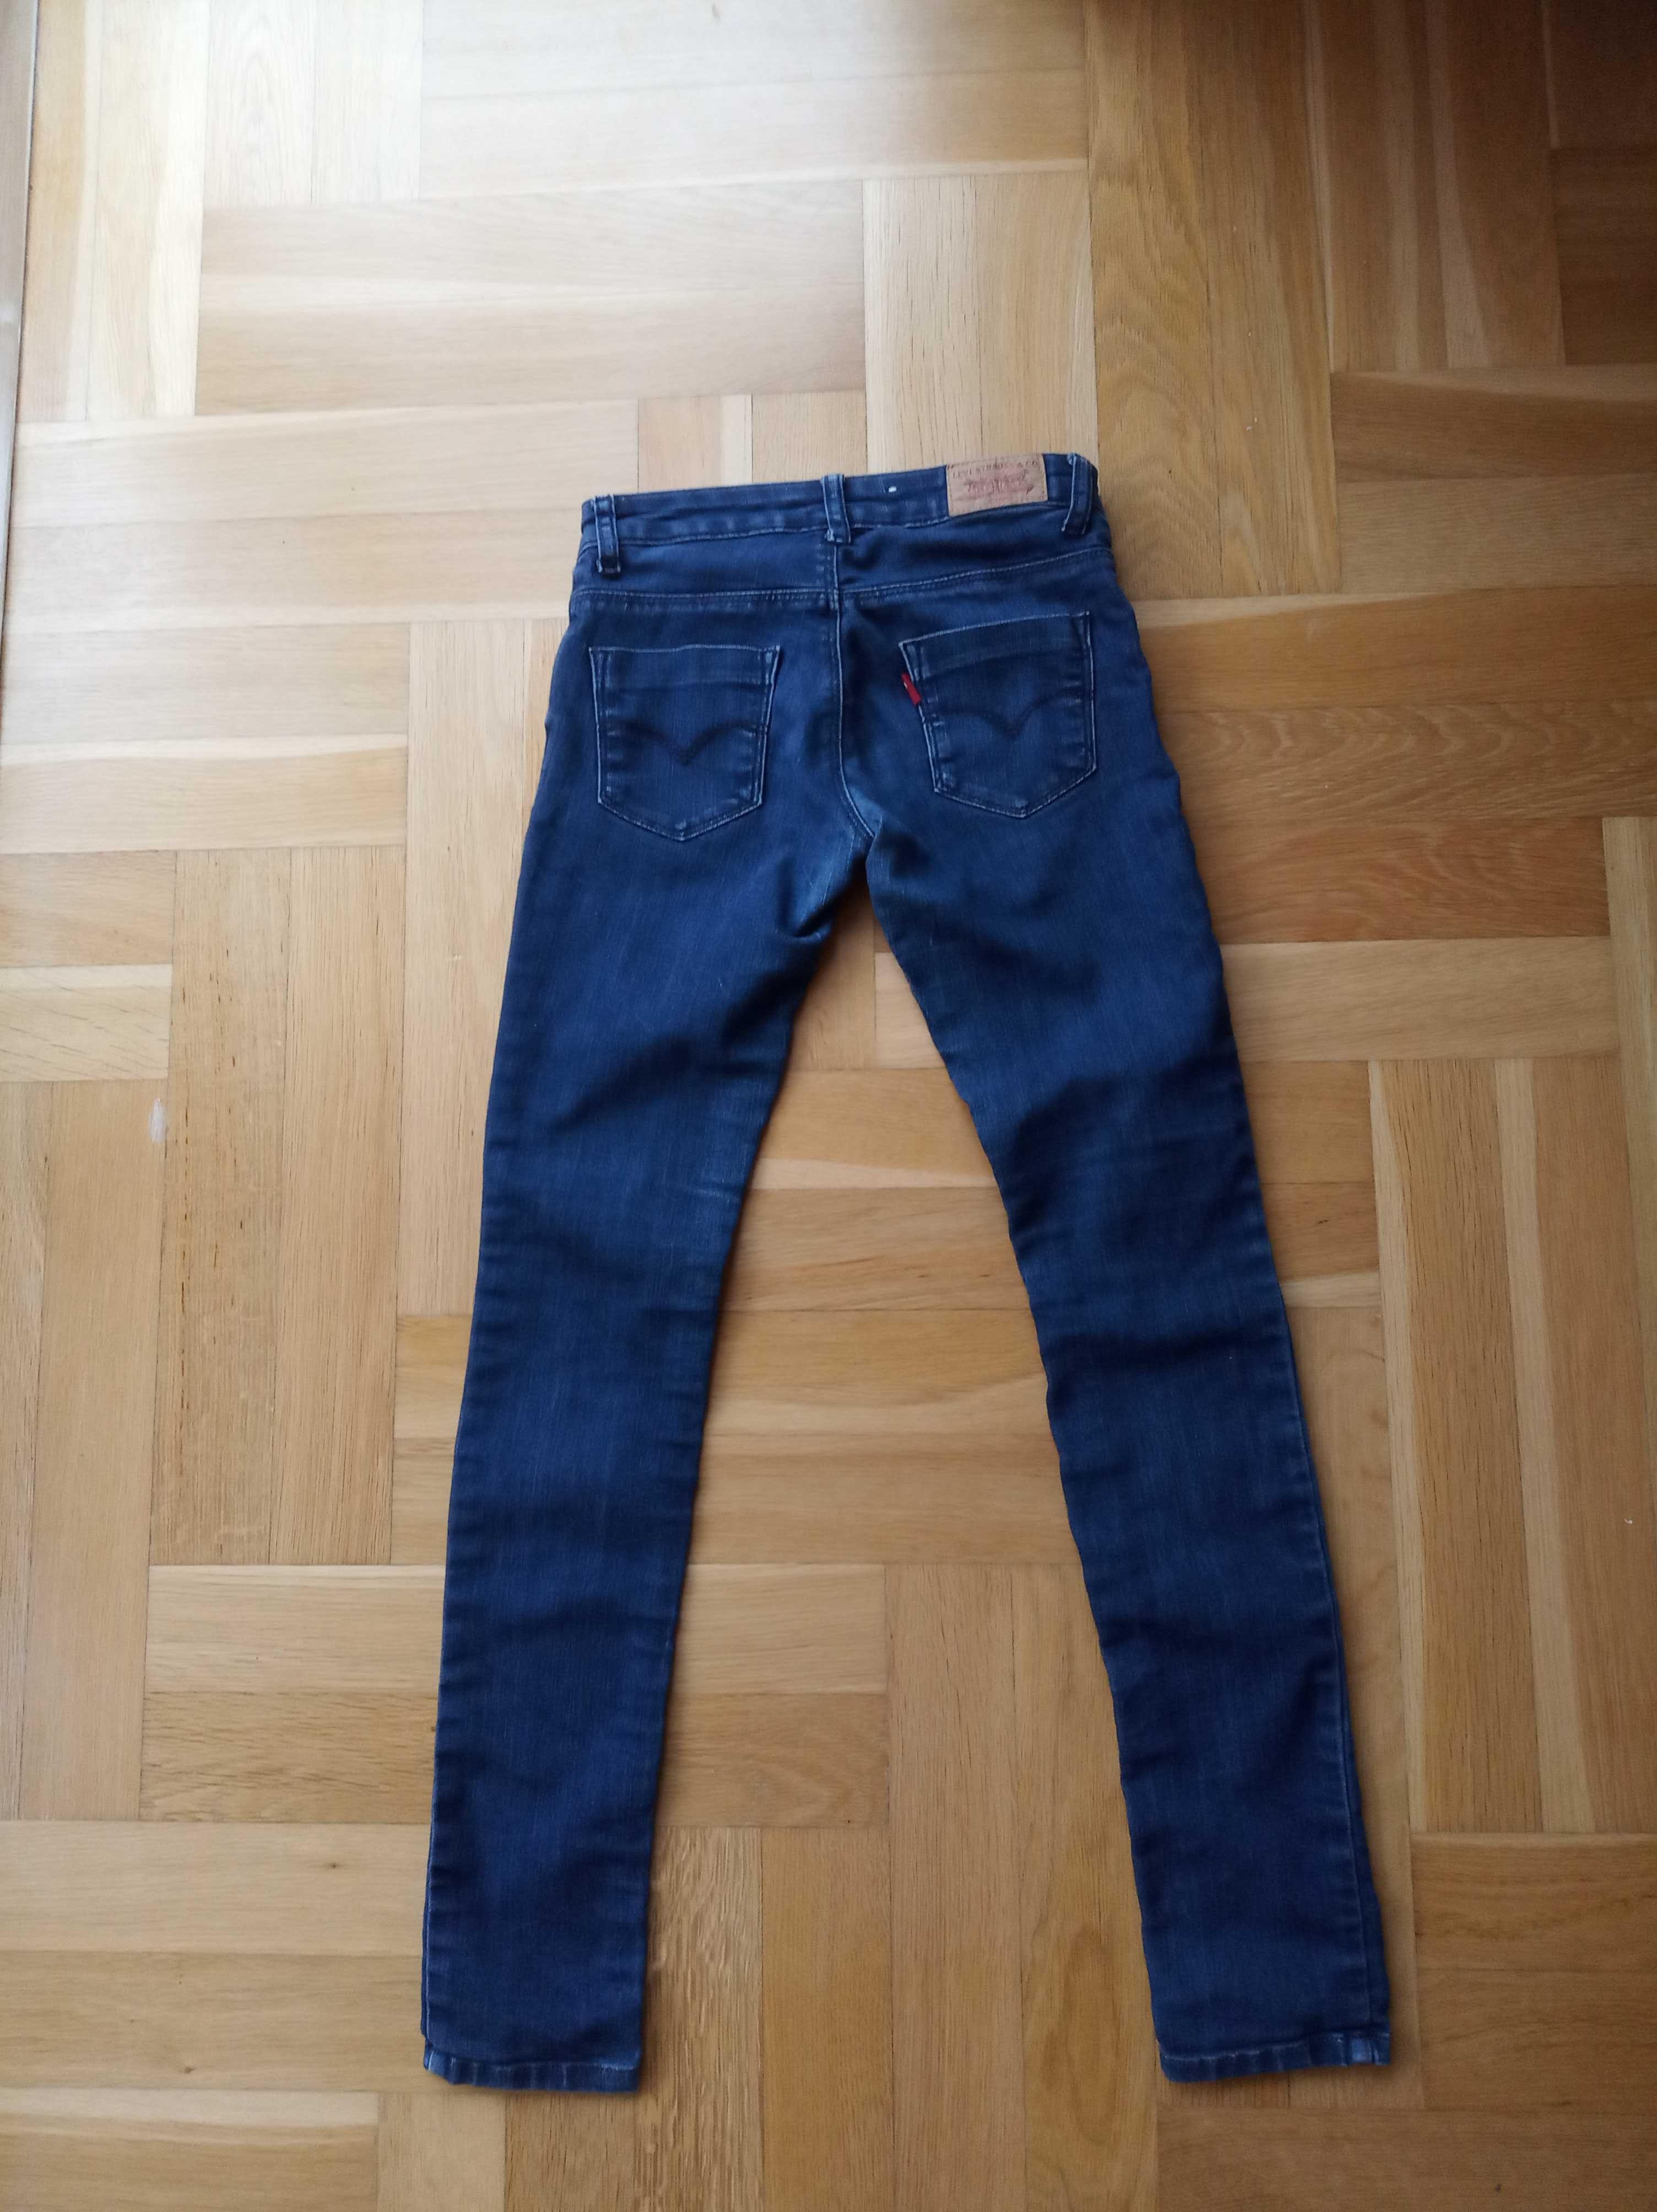 Levi's skinny jeans 14 lat